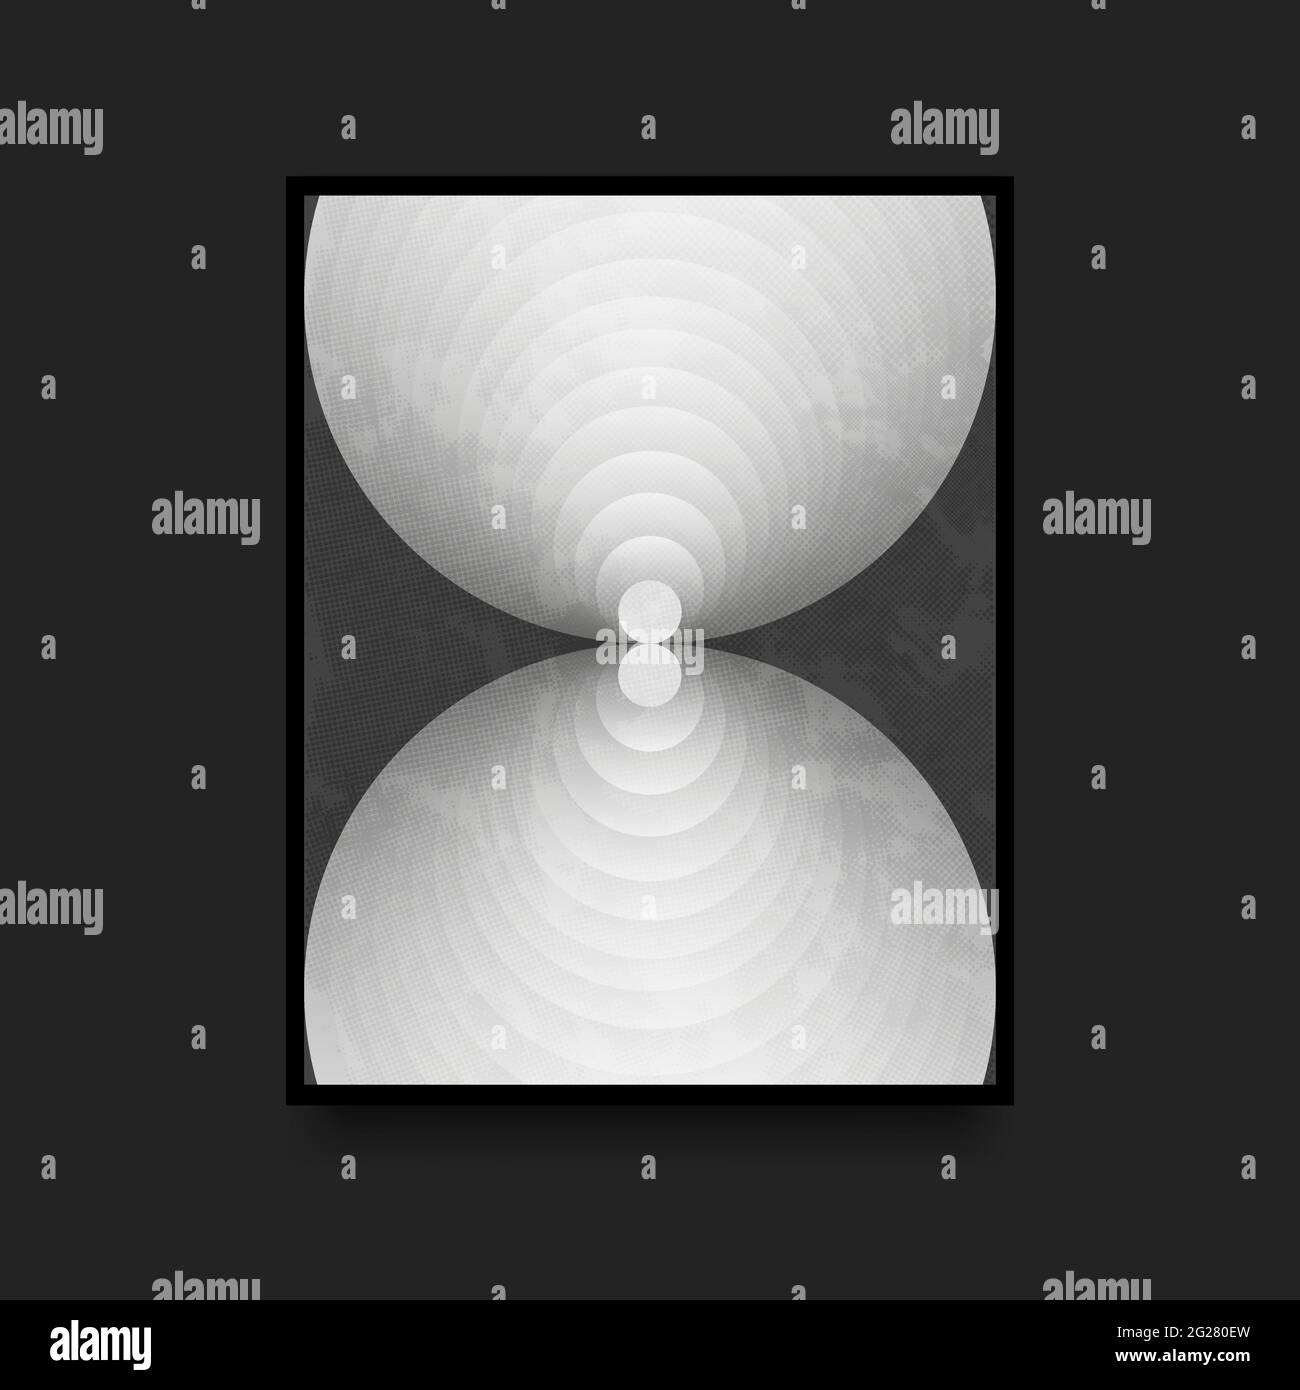 Affiche graphique en noir et blanc de style suisse. Illusion optique. Réflexion de cercles. Illustration vectorielle Illustration de Vecteur